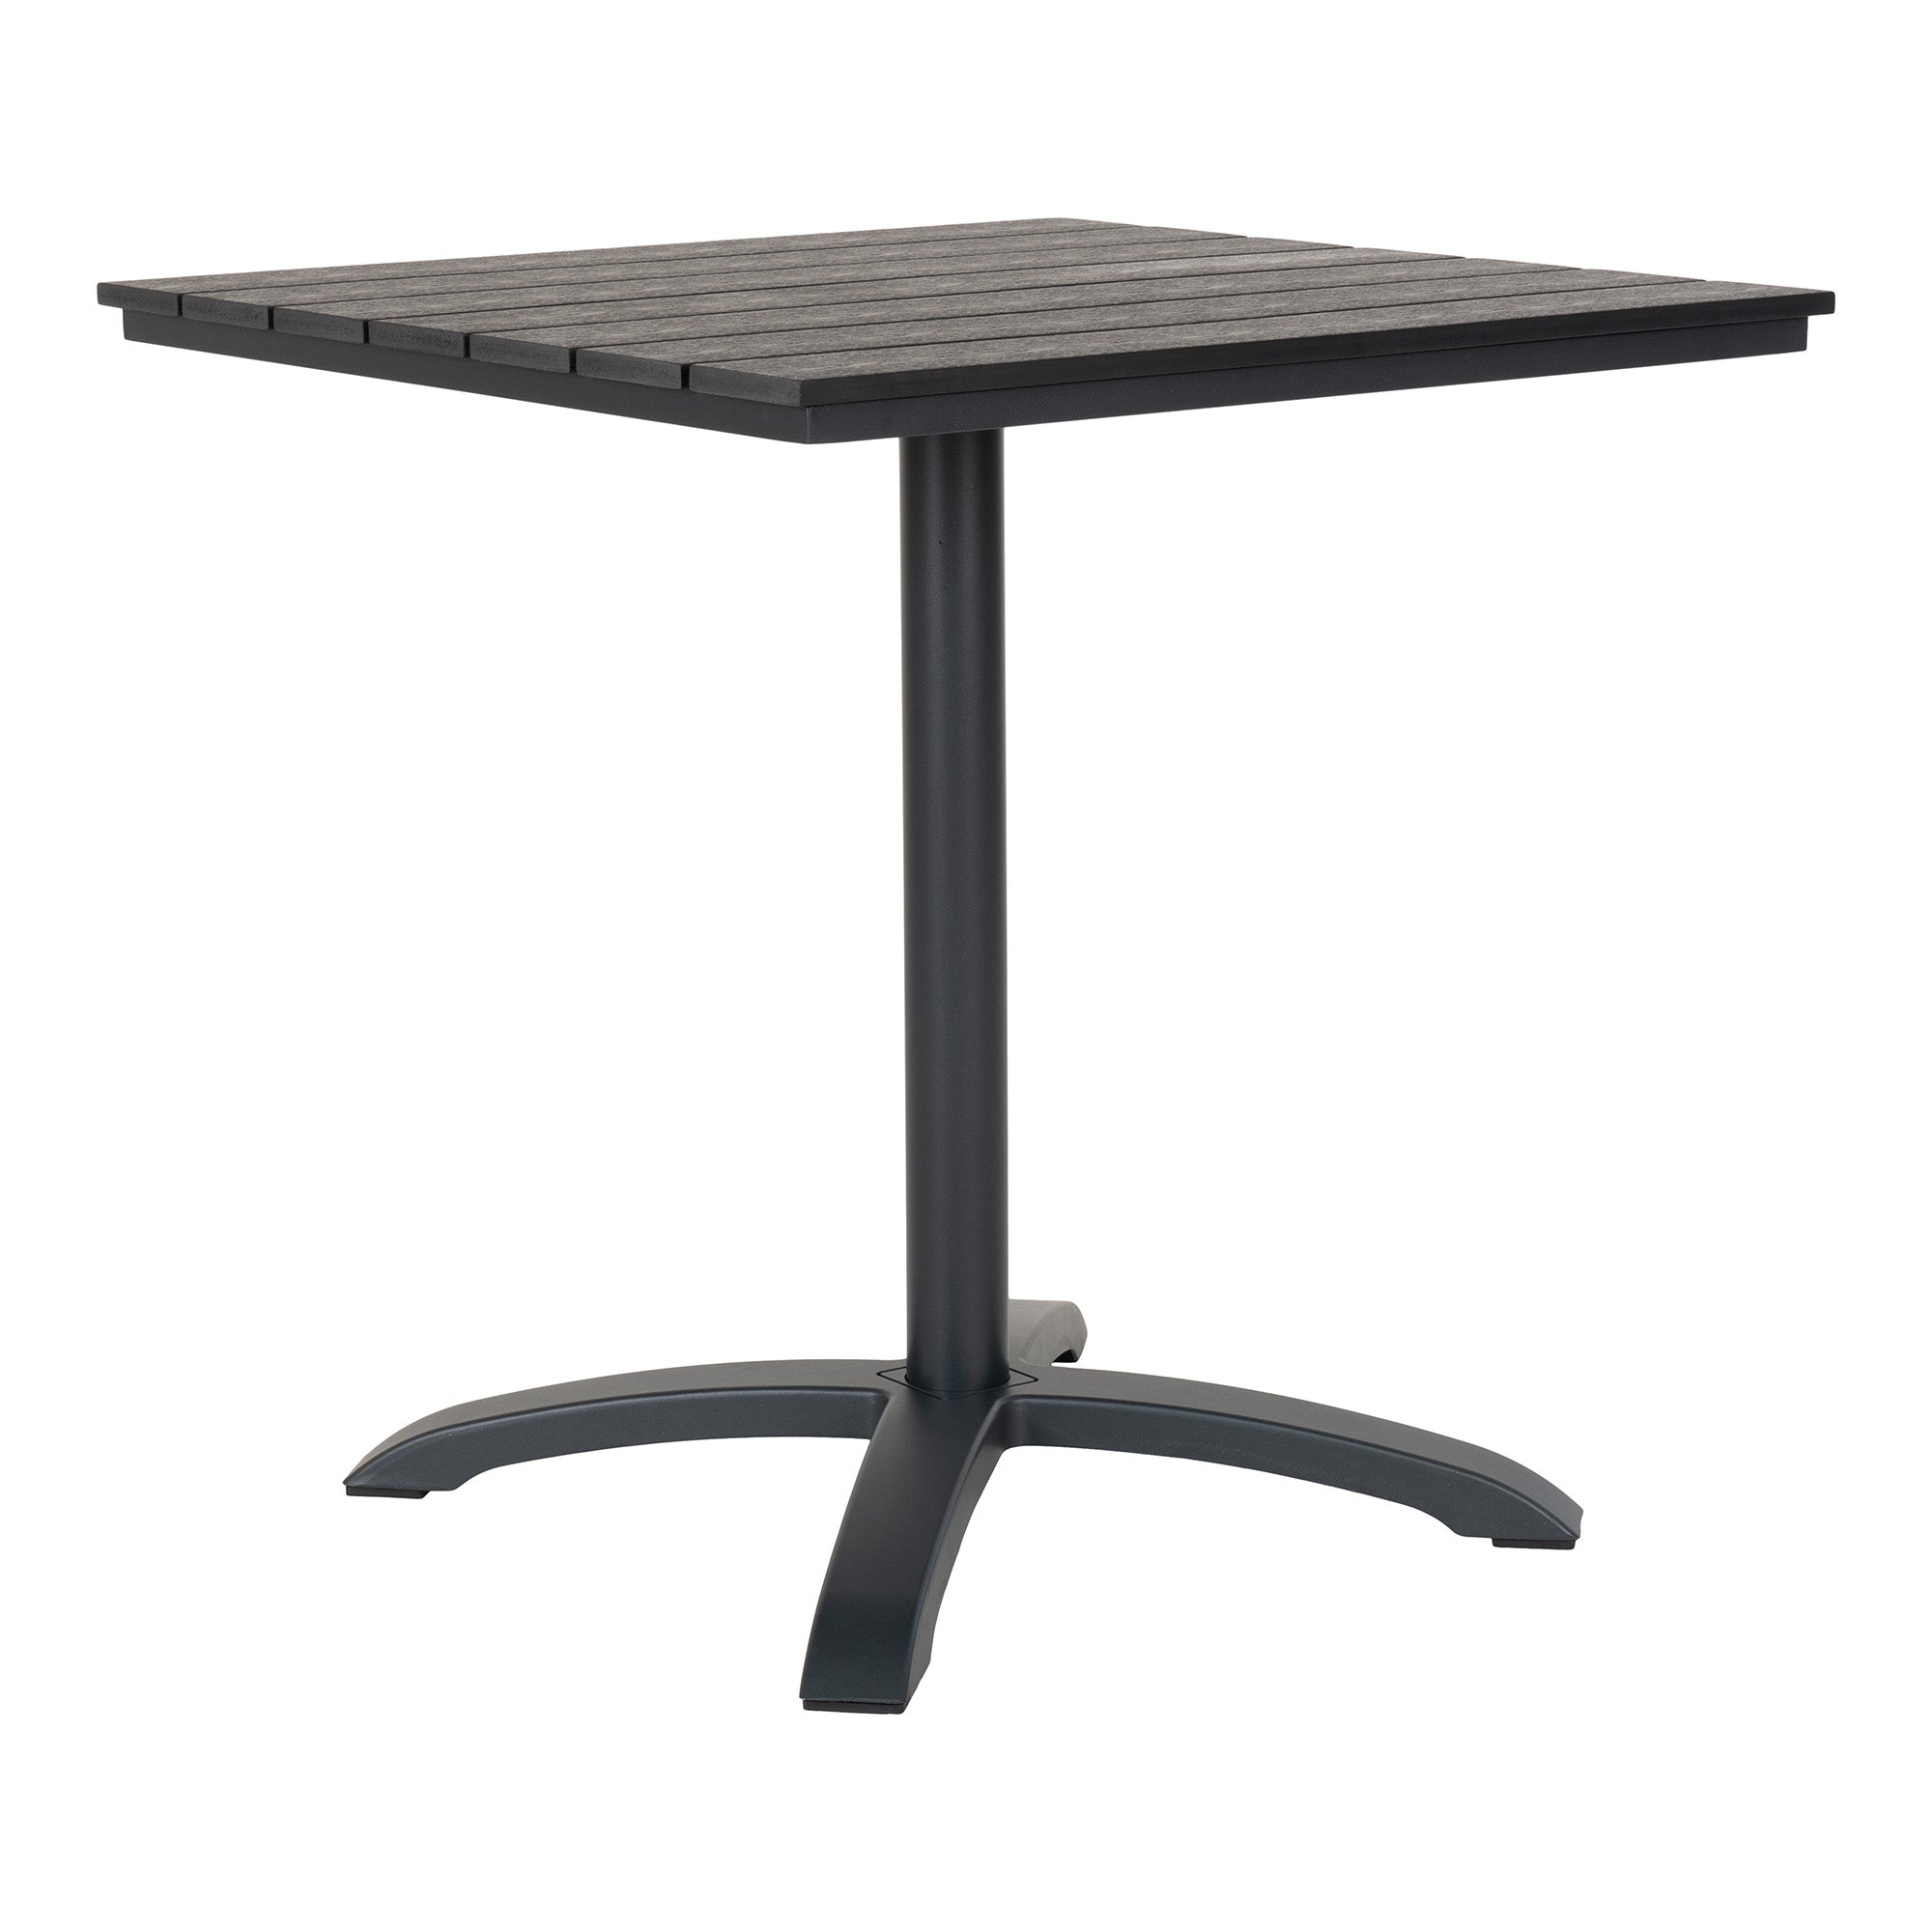 Billede af Chicago Cafébord - Cafébord med bordplade i grå nonwood og sorte ben, 70x70x72 cm hos Lammeuld.dk